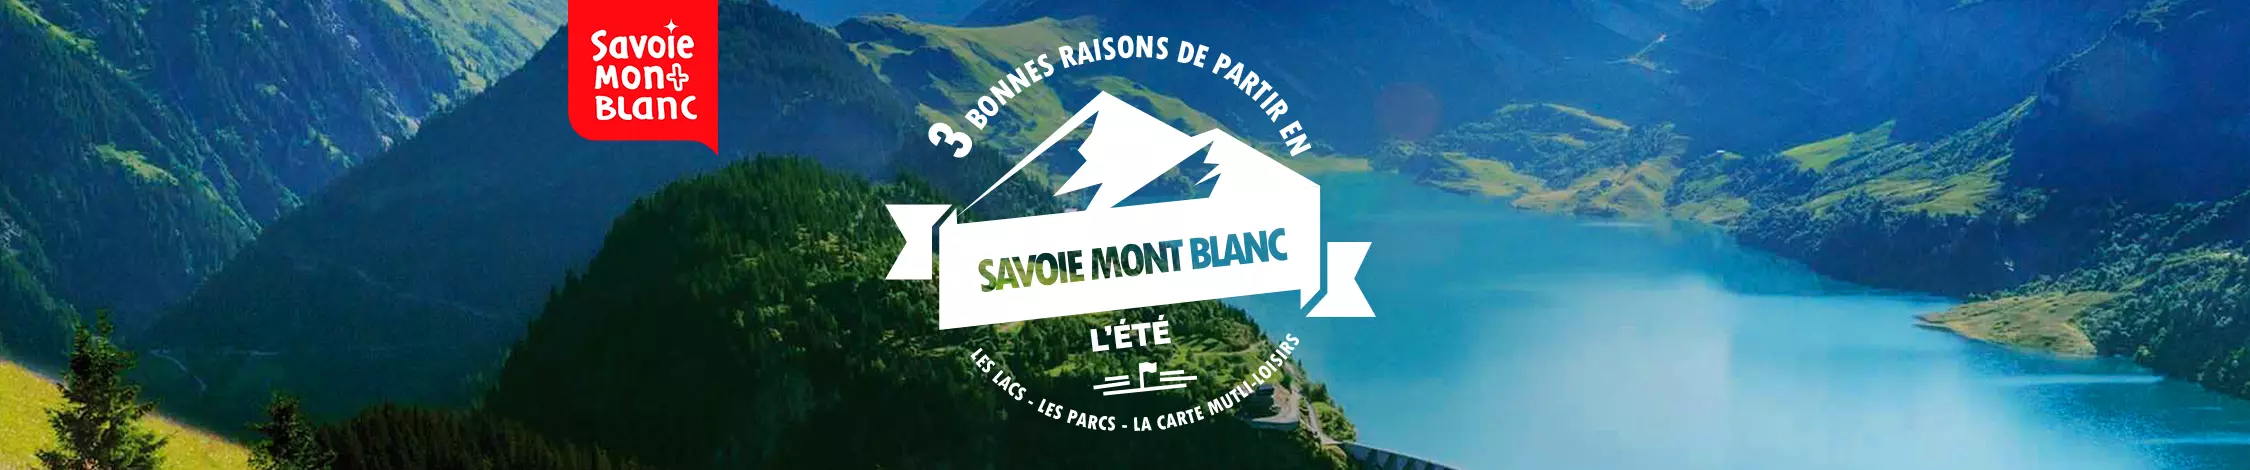 Savoie-Mont-Blanc t